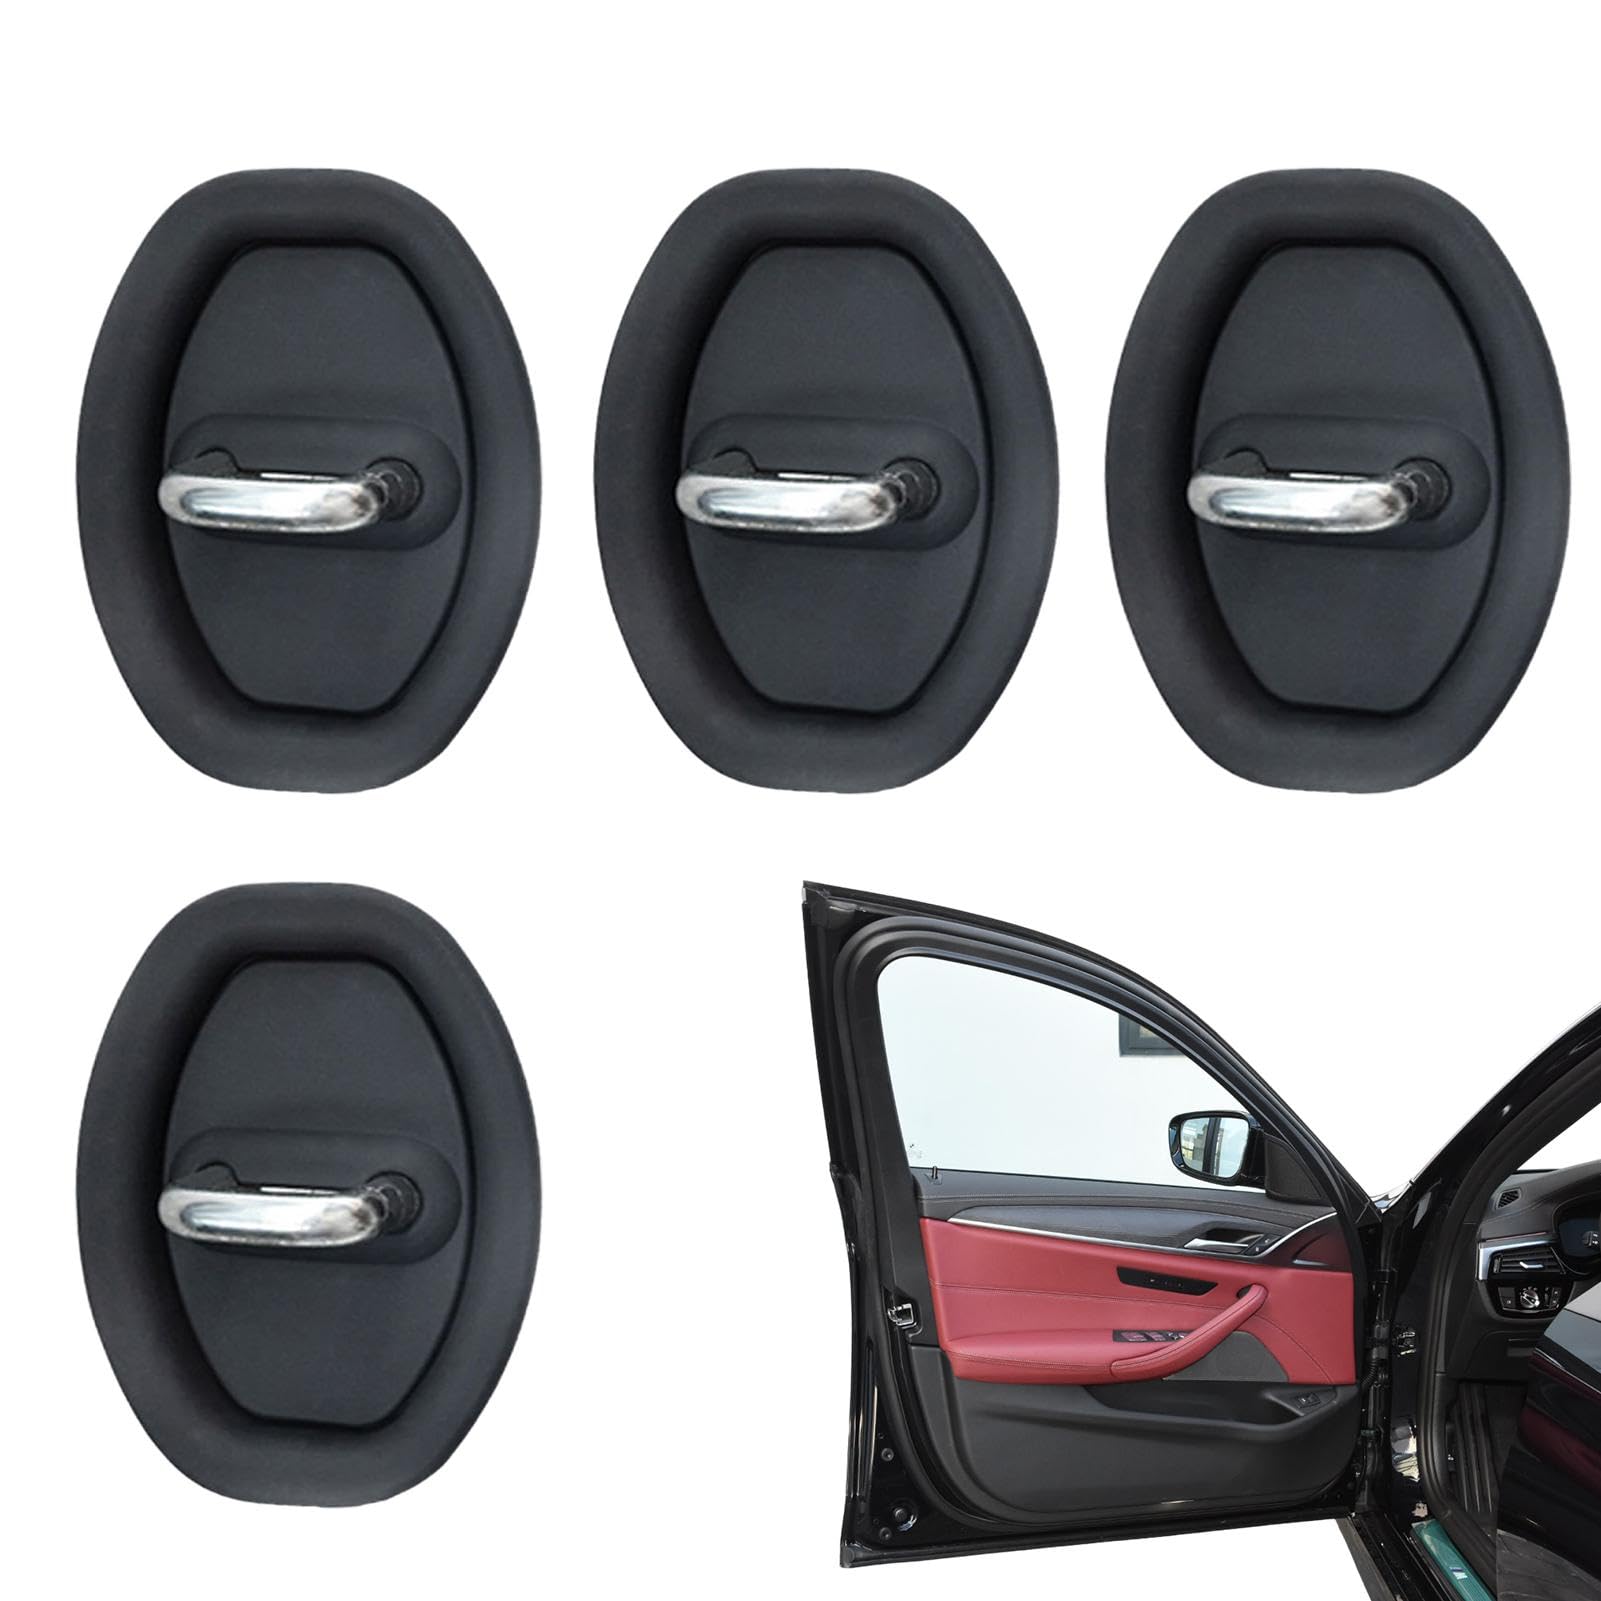 4 Silikon-Türriegel-Schutzhüllen für Autotürschlösser | Auto-Silikon-Türverriegelungs-Schutzabdeckung, geräuschlose Stoßdämpfung, Fahrzeugtüren, Schlösser, Schutzstopper-Set, Autozubehör von Virtcooy